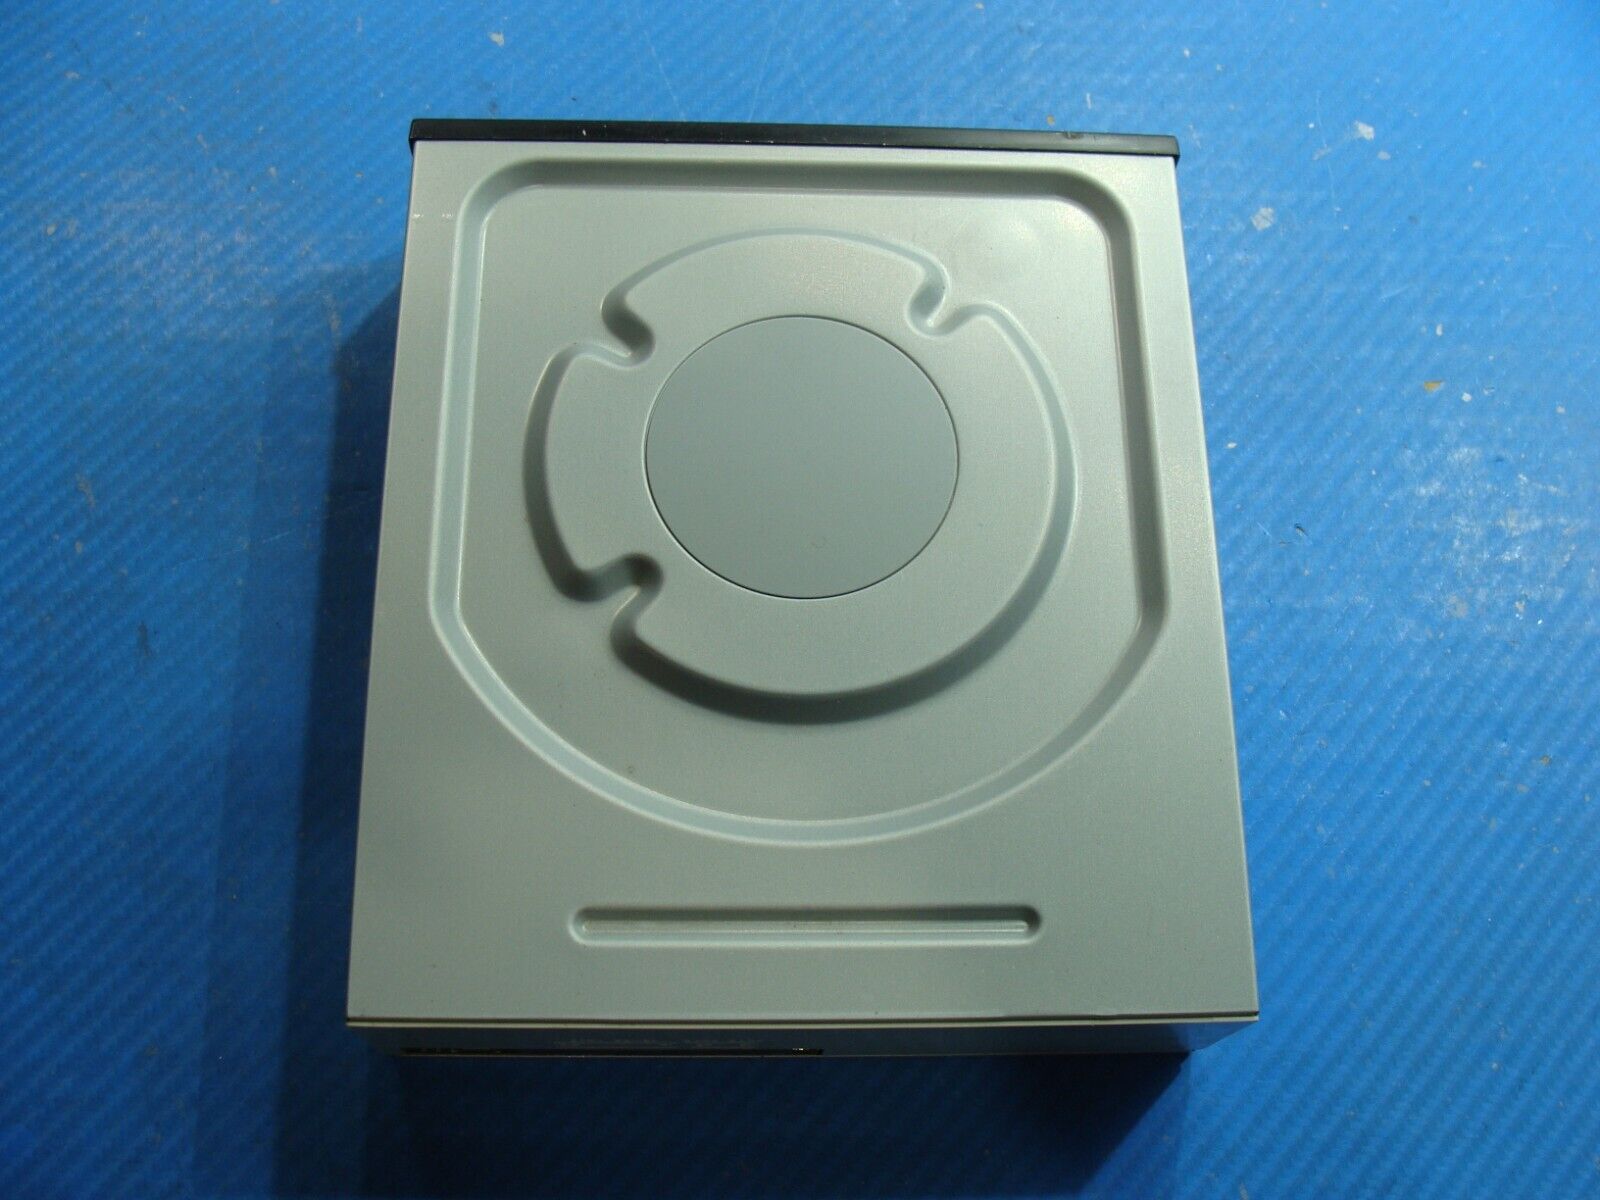 Asus Gaming OEM Desktop CD/DVD Burner Reader Optical Disc Drive DRW-24B1ST-38